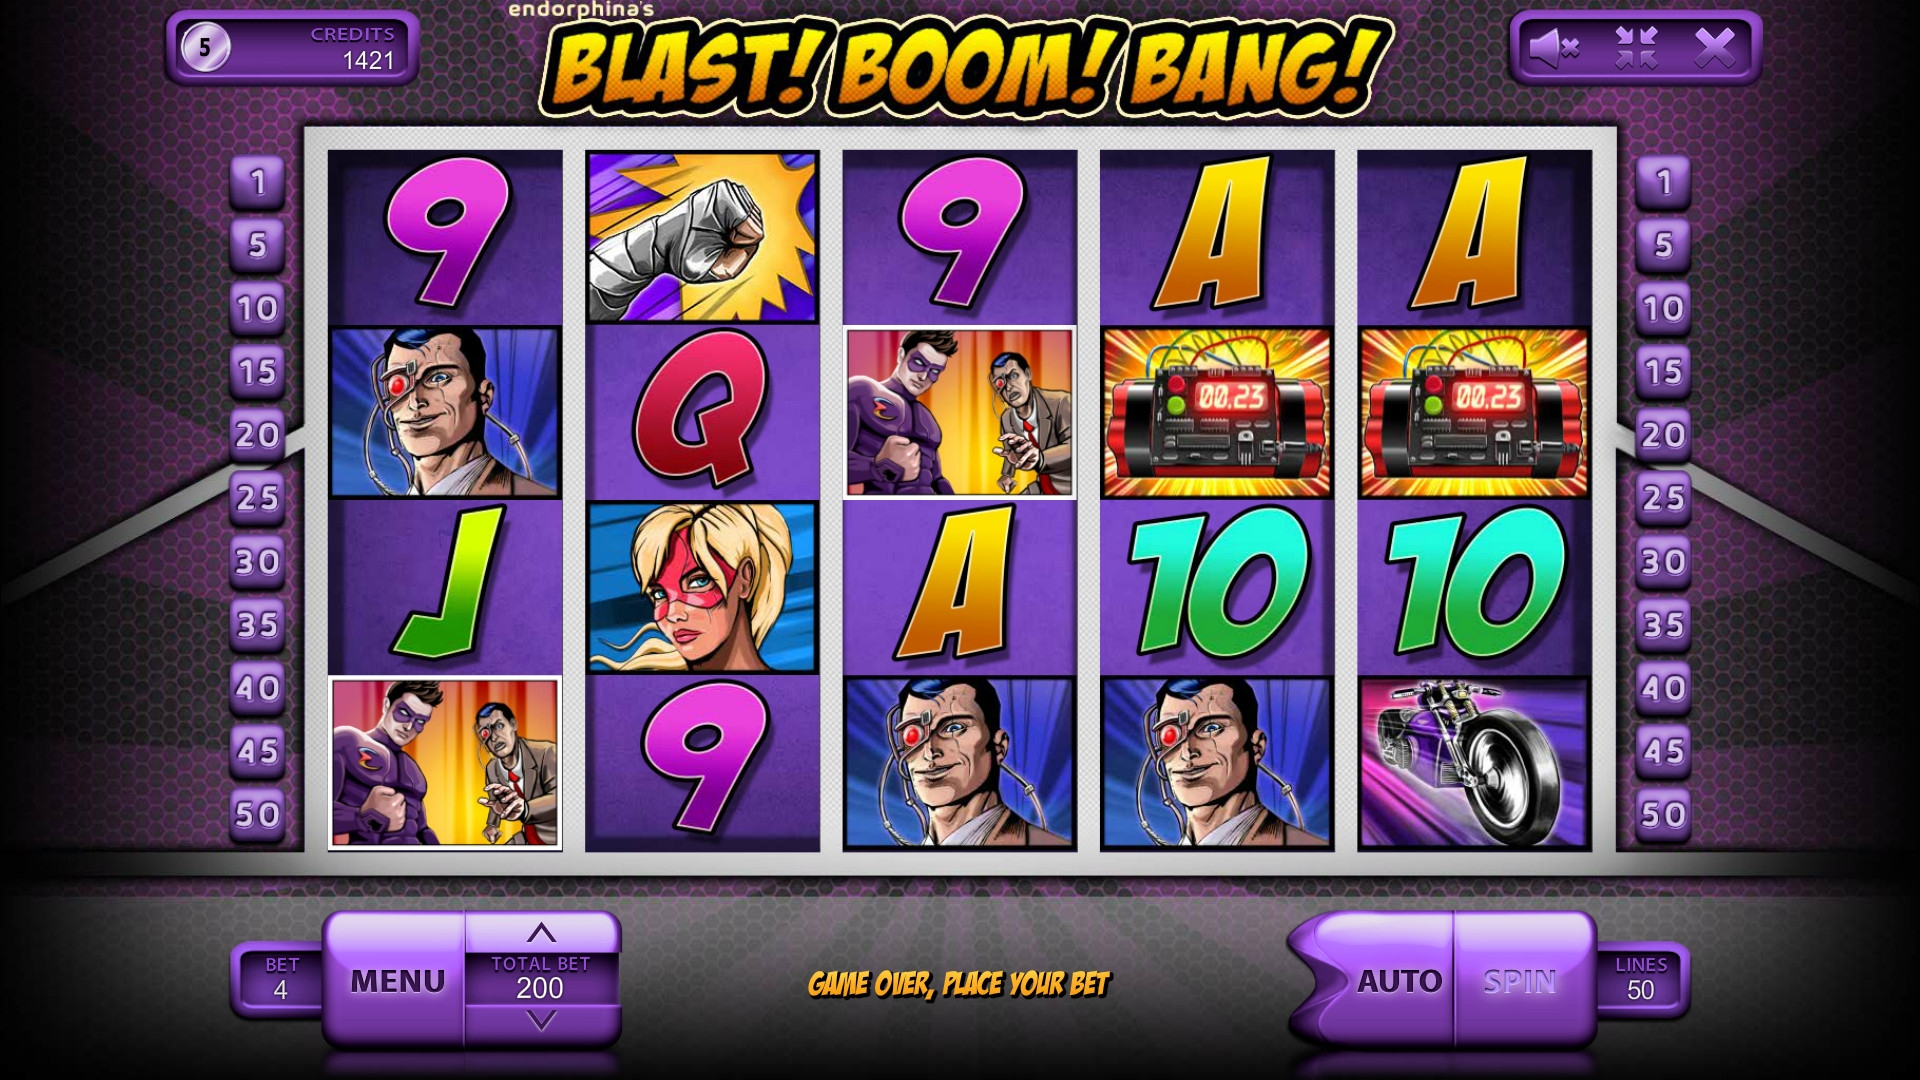 Blast! Boom! Bang! (Blast! Boom! Bang!) from category Slots